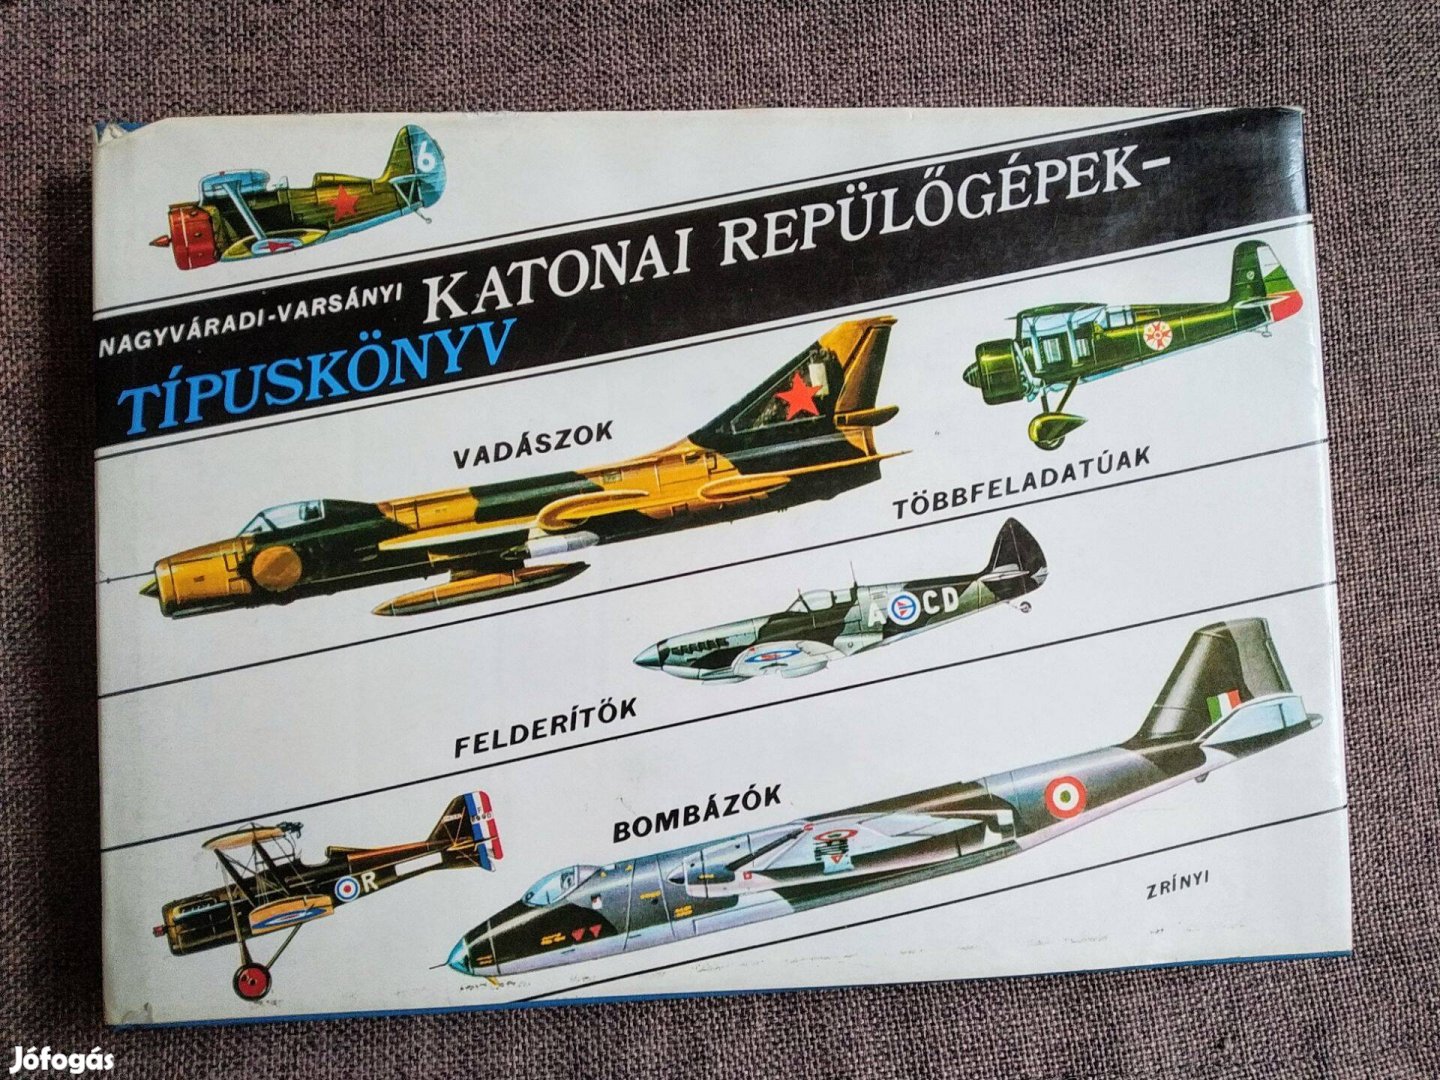 Katonai repülőgépek-Típuskönyv Nagyváradi-Varsányi Zrínyi Katonai